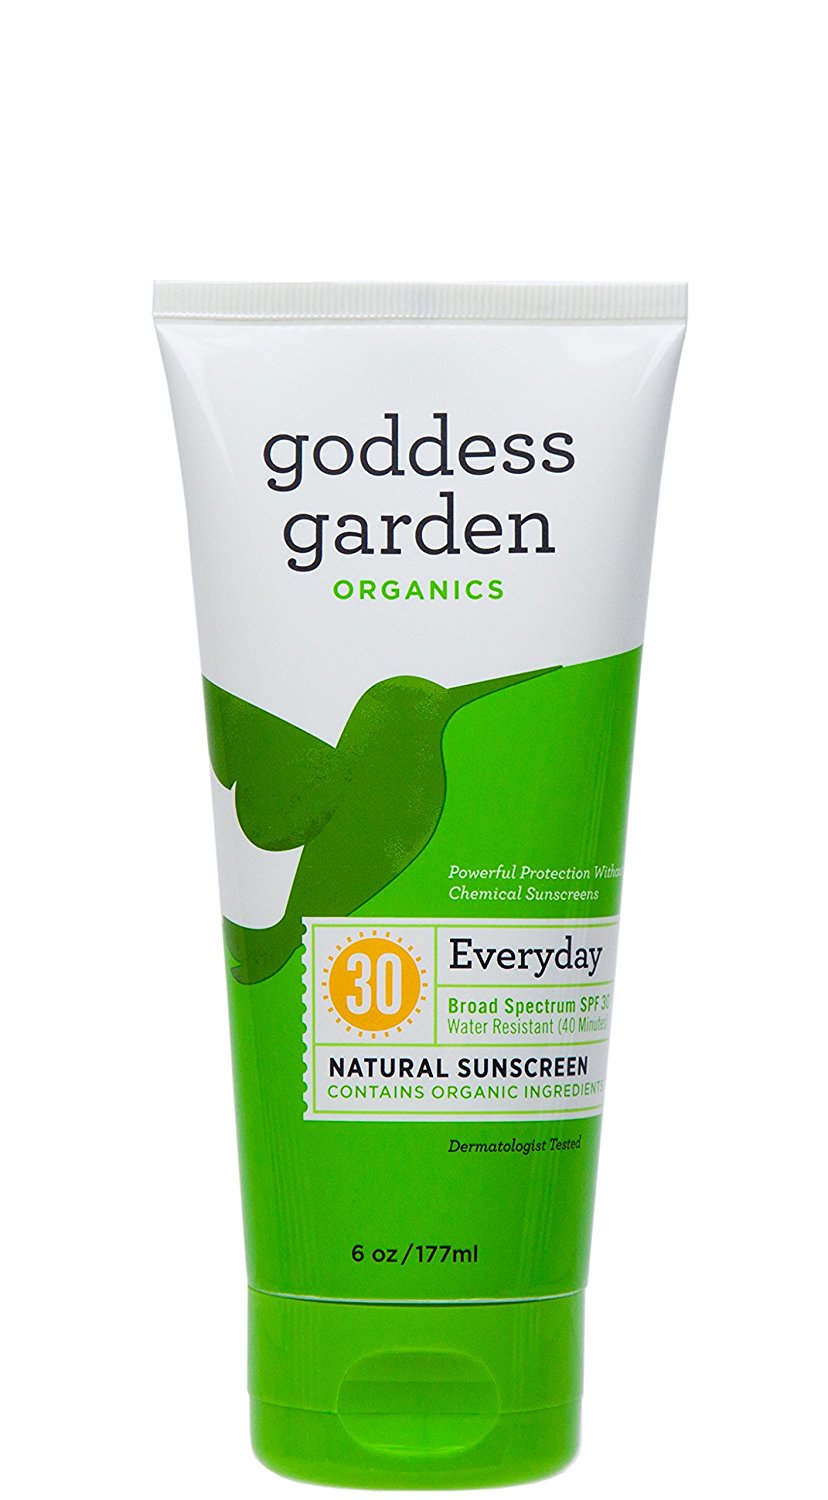 goddess garden organics everyday sunscreen